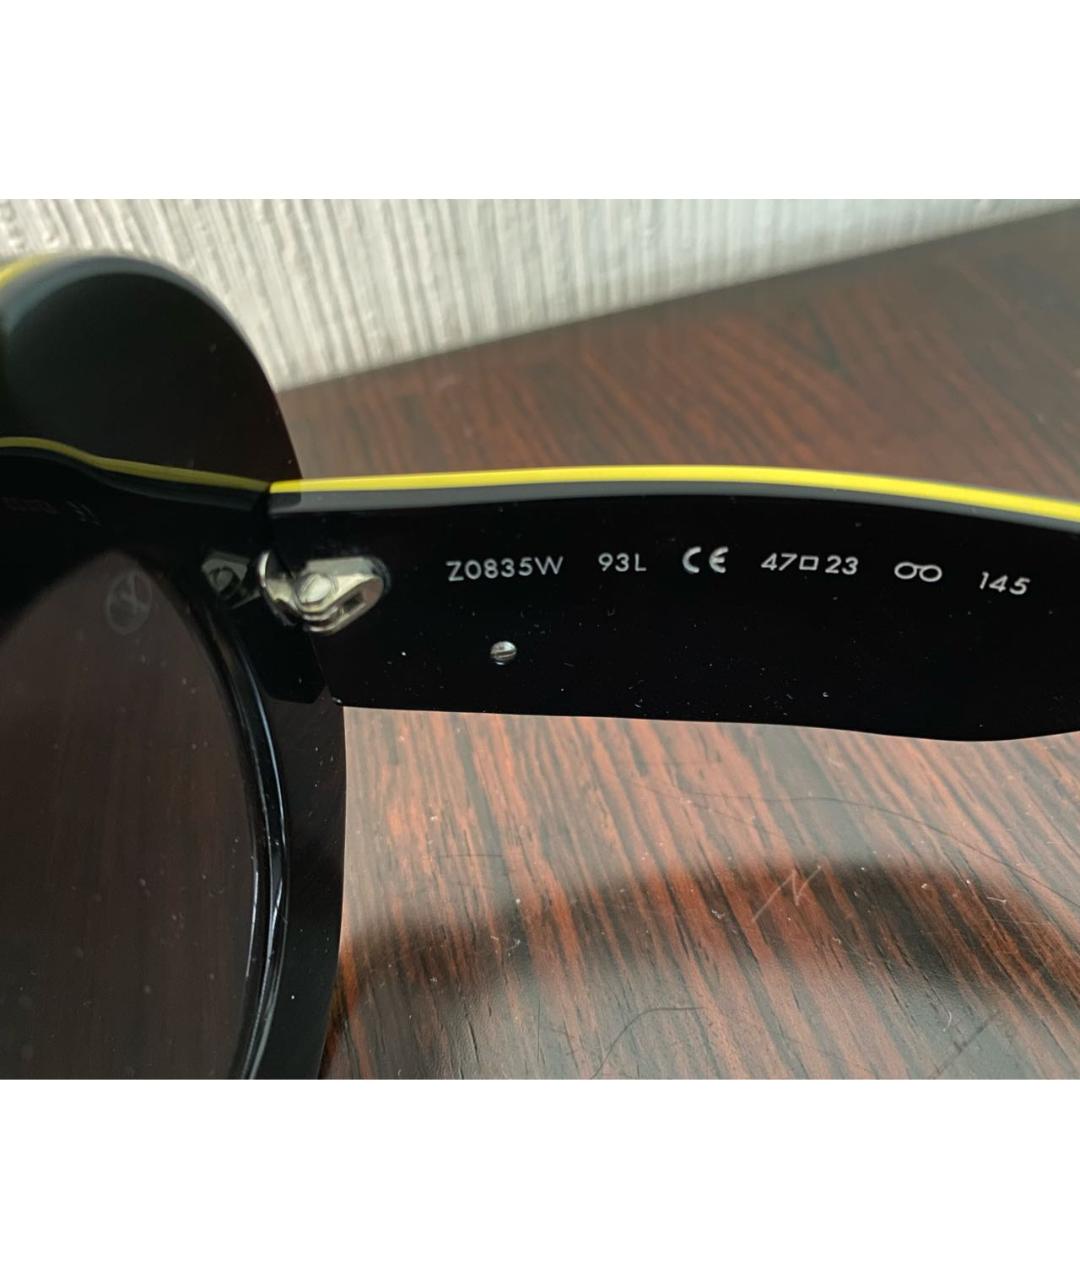 LOUIS VUITTON PRE-OWNED Черные пластиковые солнцезащитные очки, фото 4